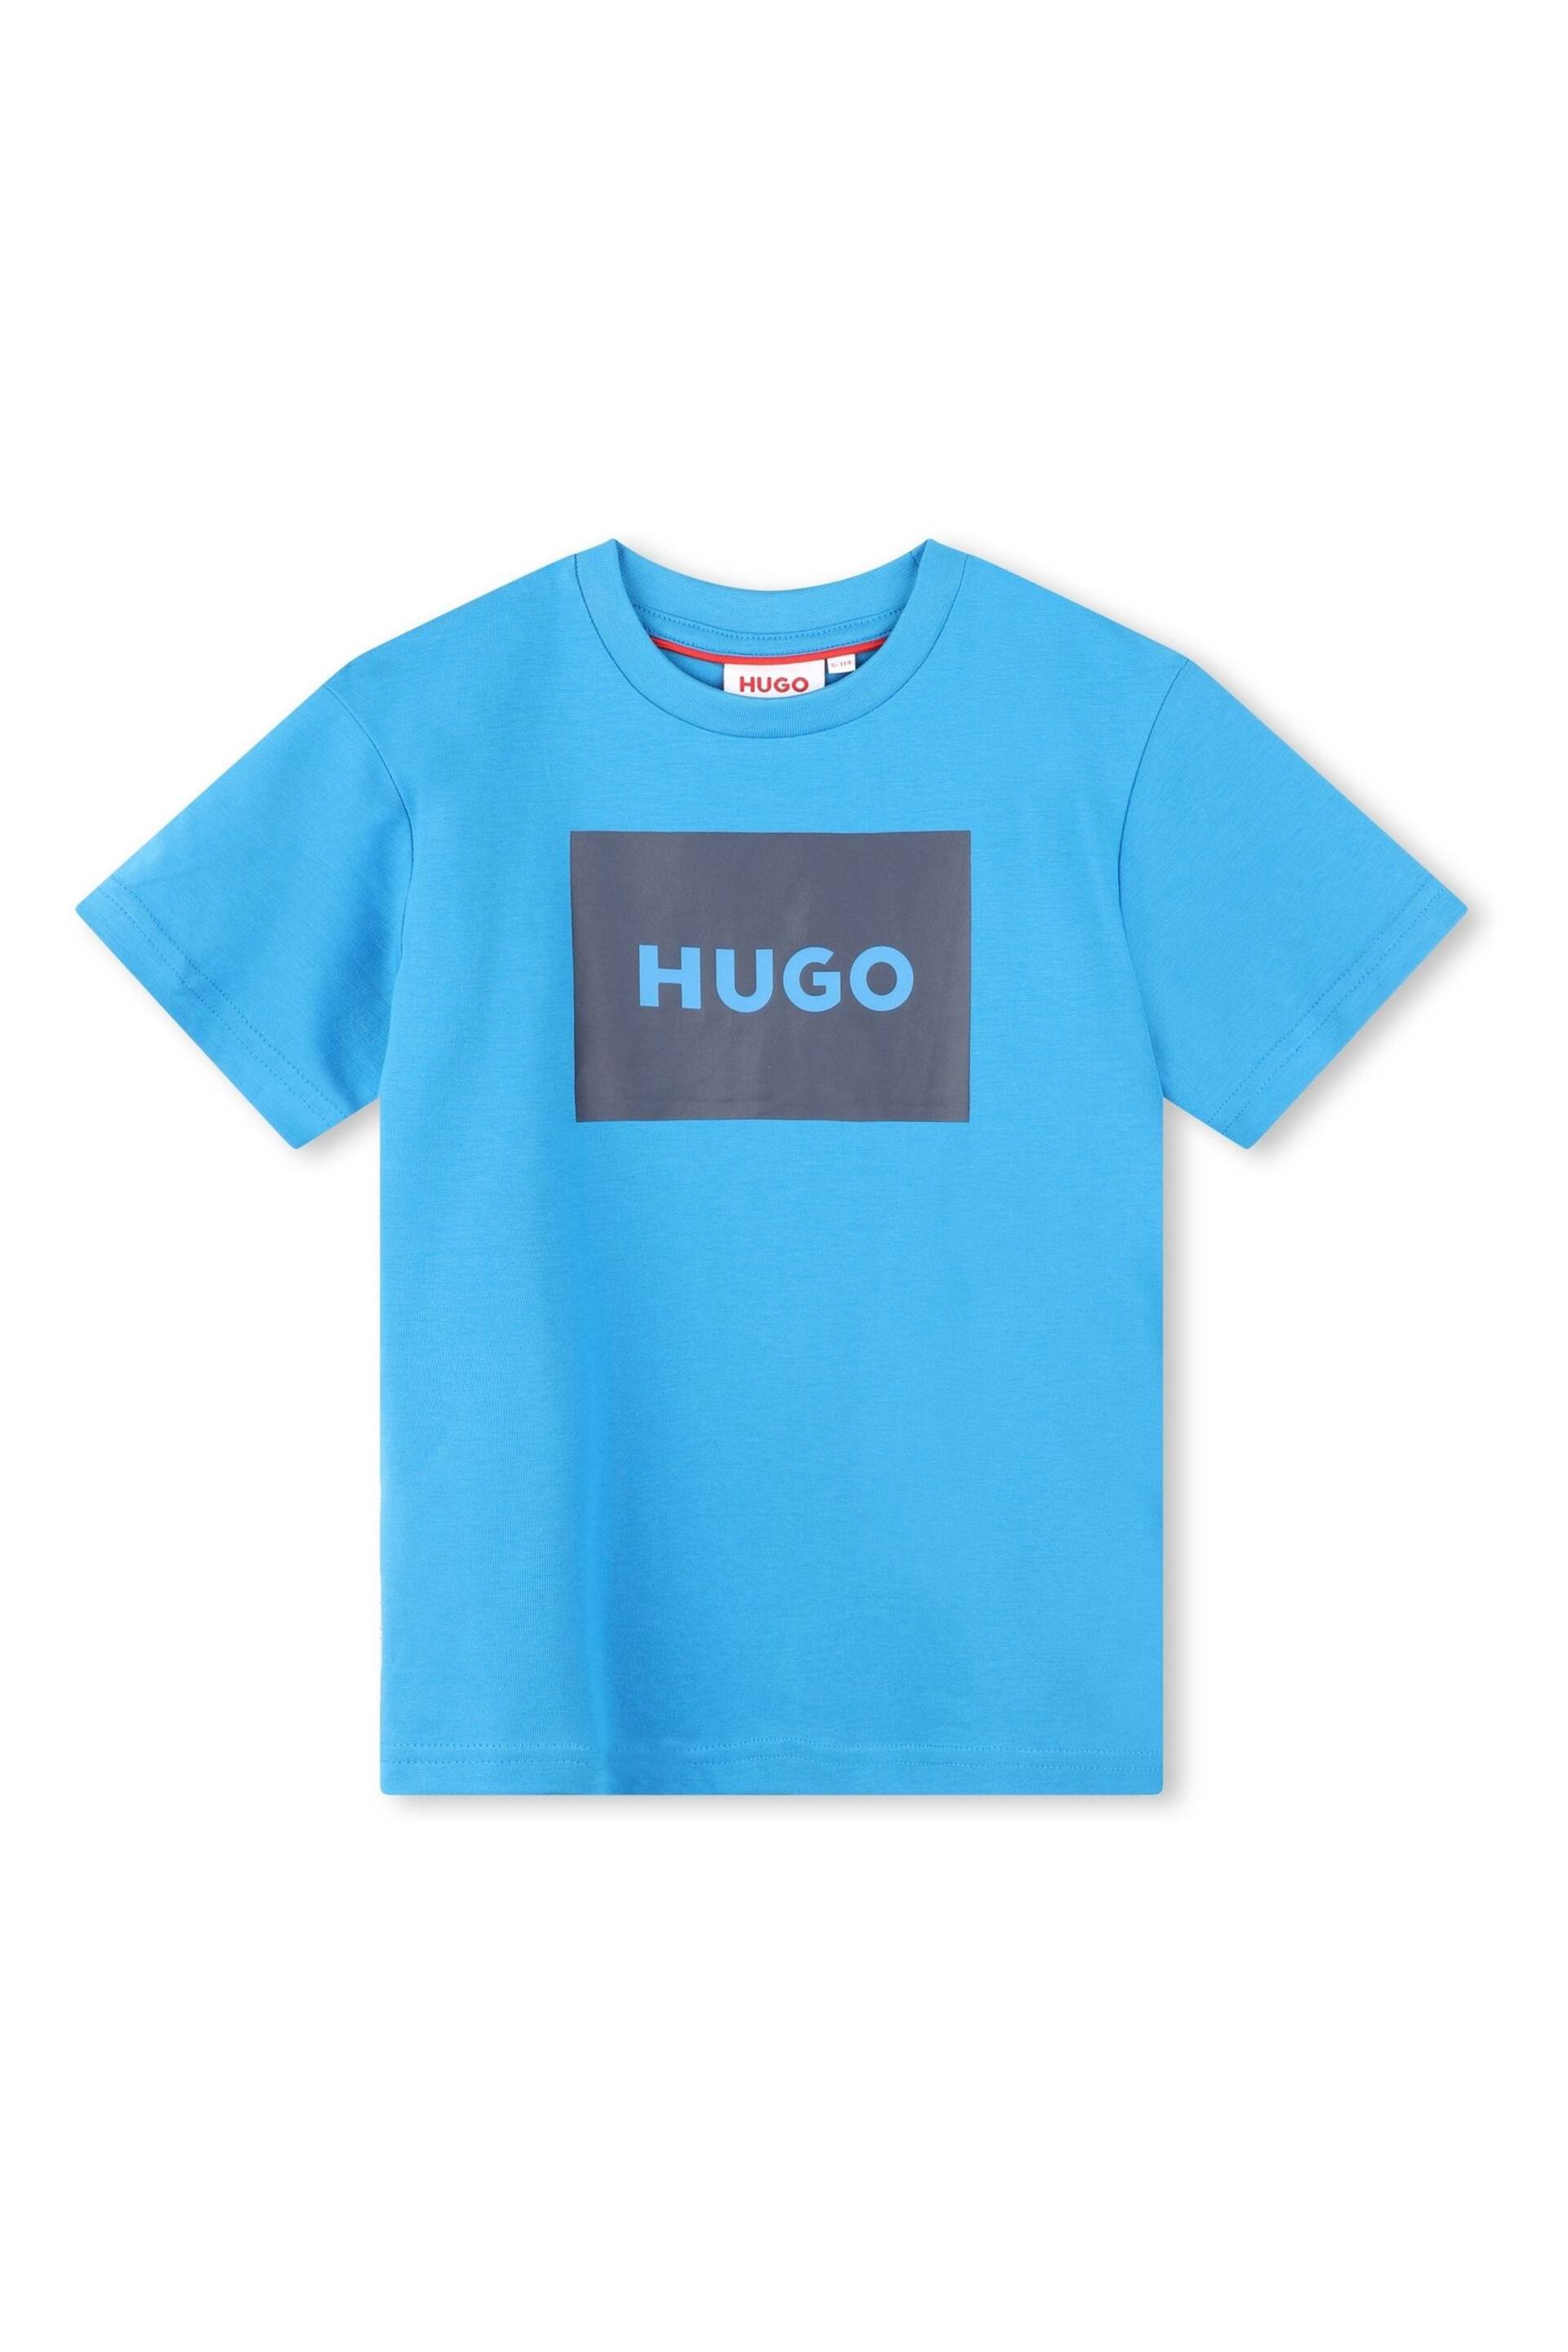 HUGO Blue Logo Short Sleeve T-Shirt - Image 1 of 2